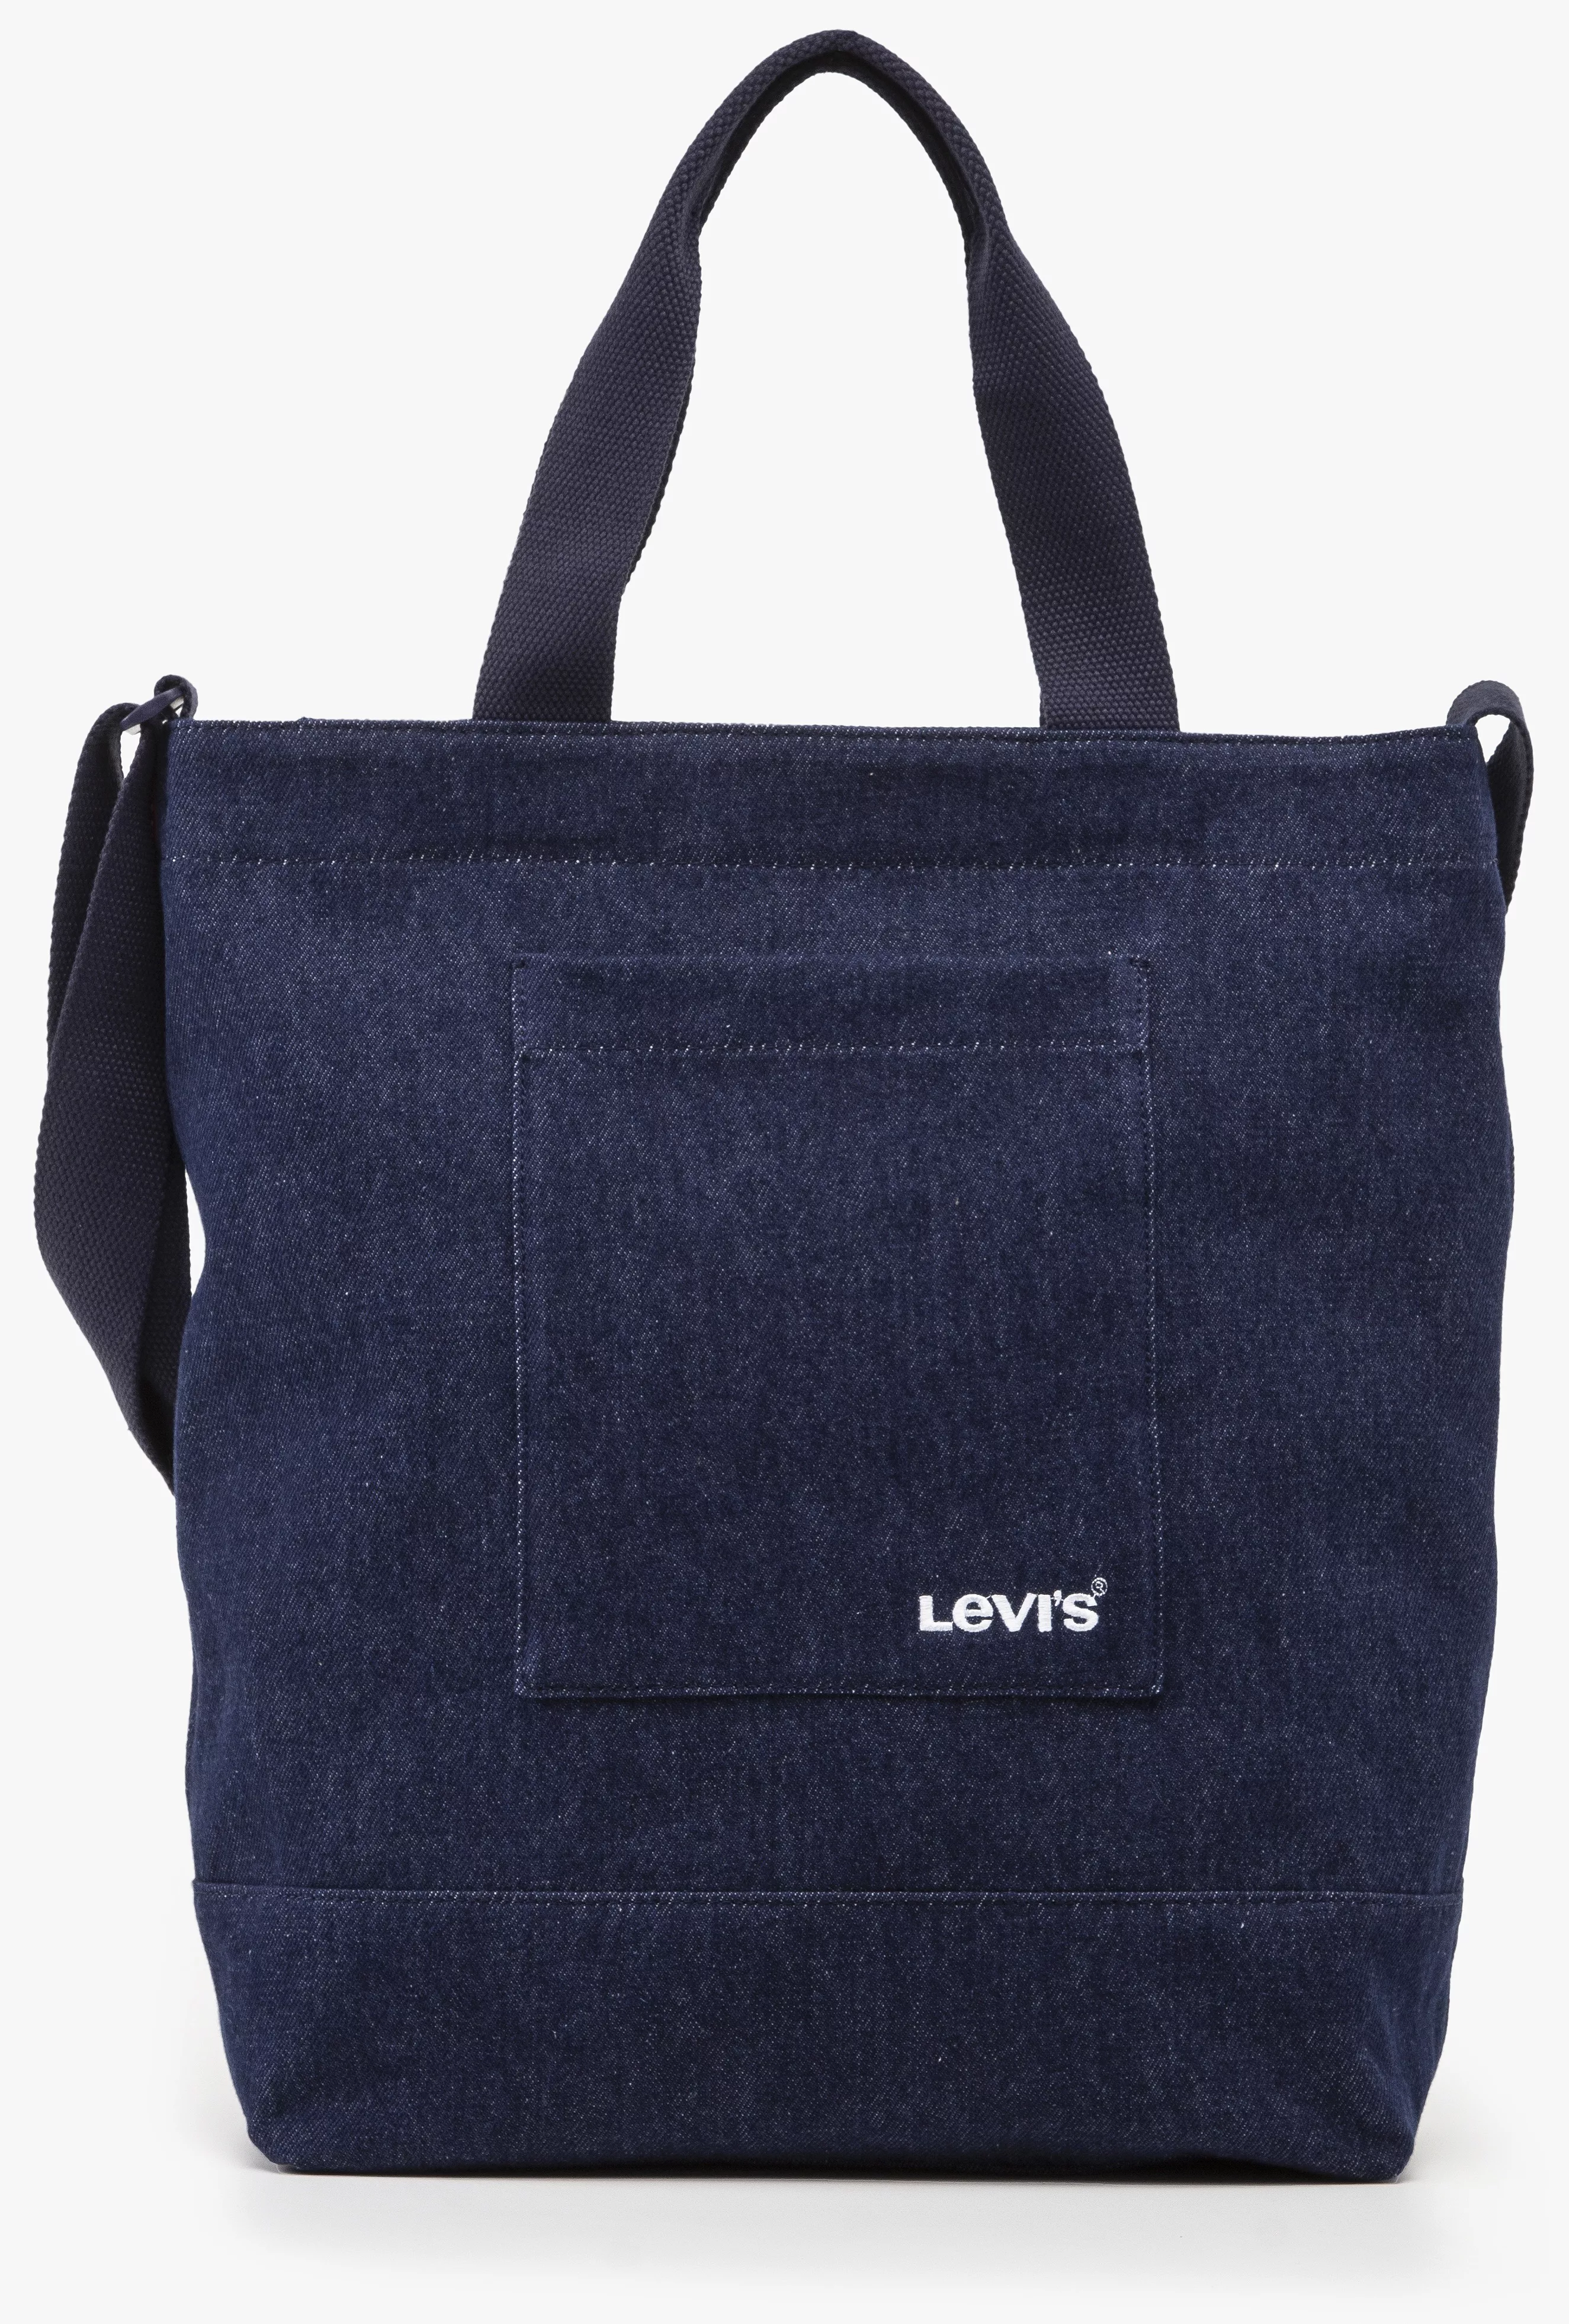 Levis Shopper, in Jeans-Optik Henkeltasche Schultertasche Umhängetasche günstig online kaufen